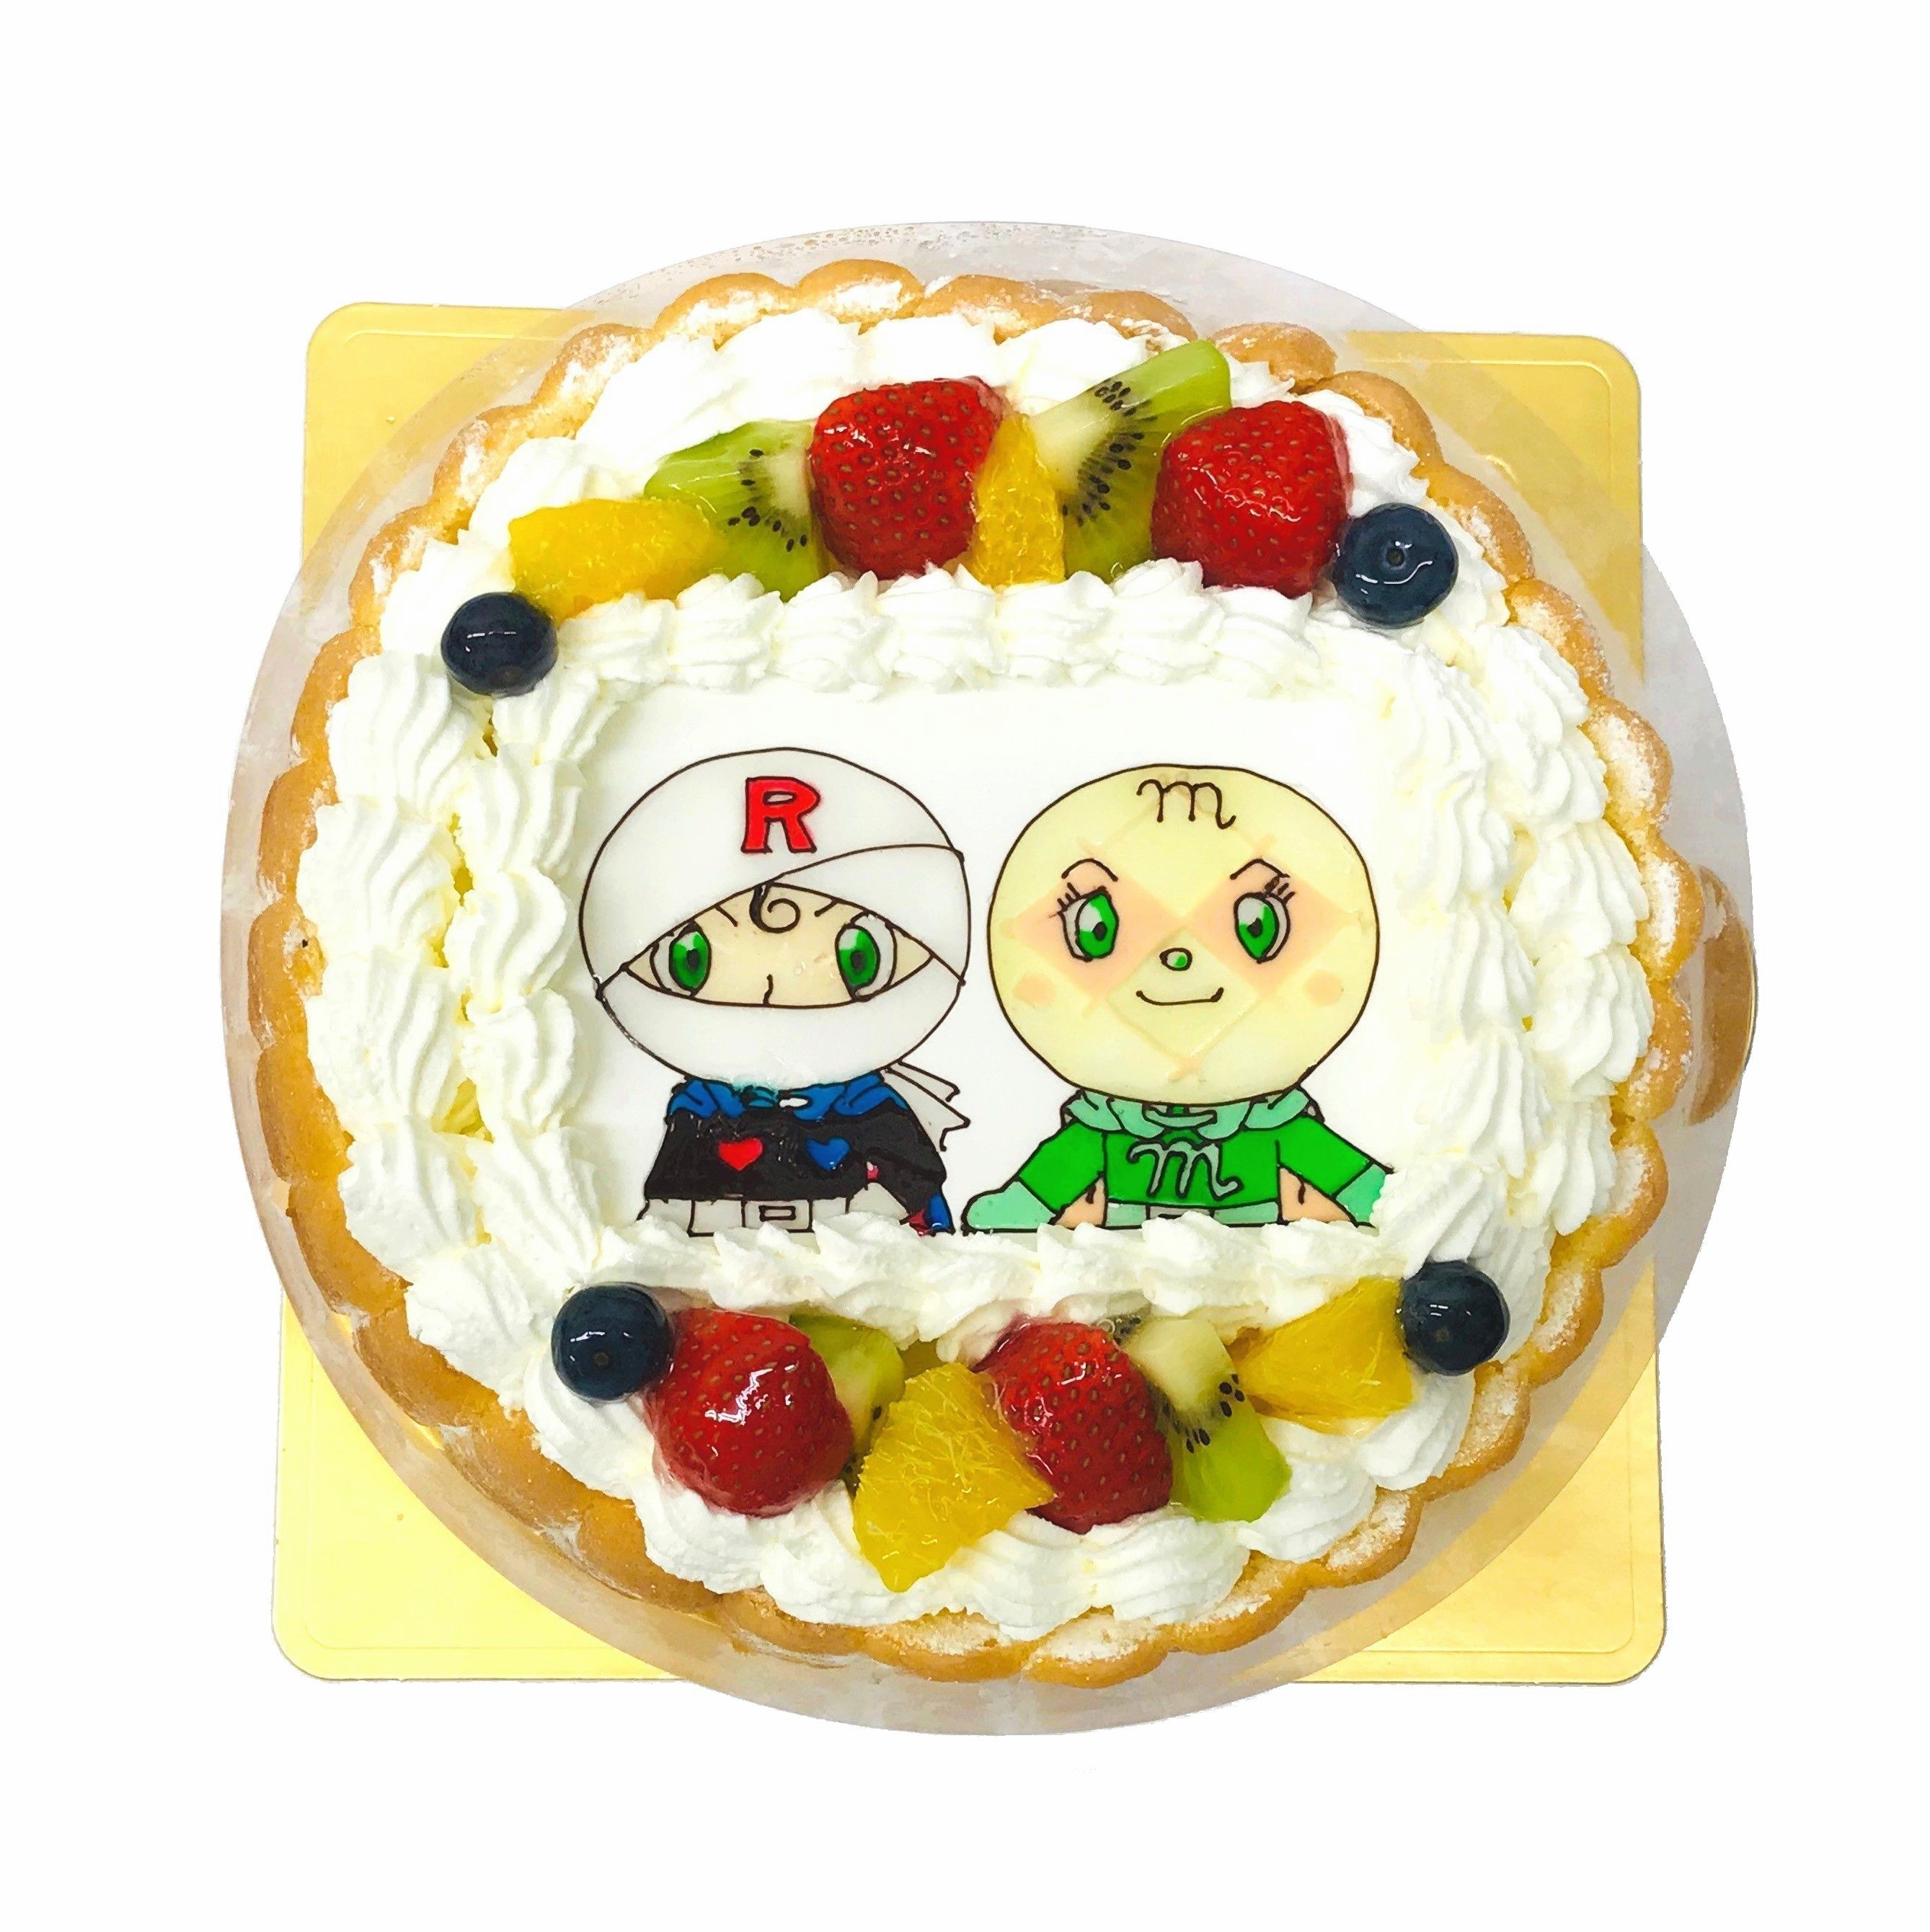 ロールパンナとメロンパンナちゃん キャラクターケーキ通販fundeco ファンデコ